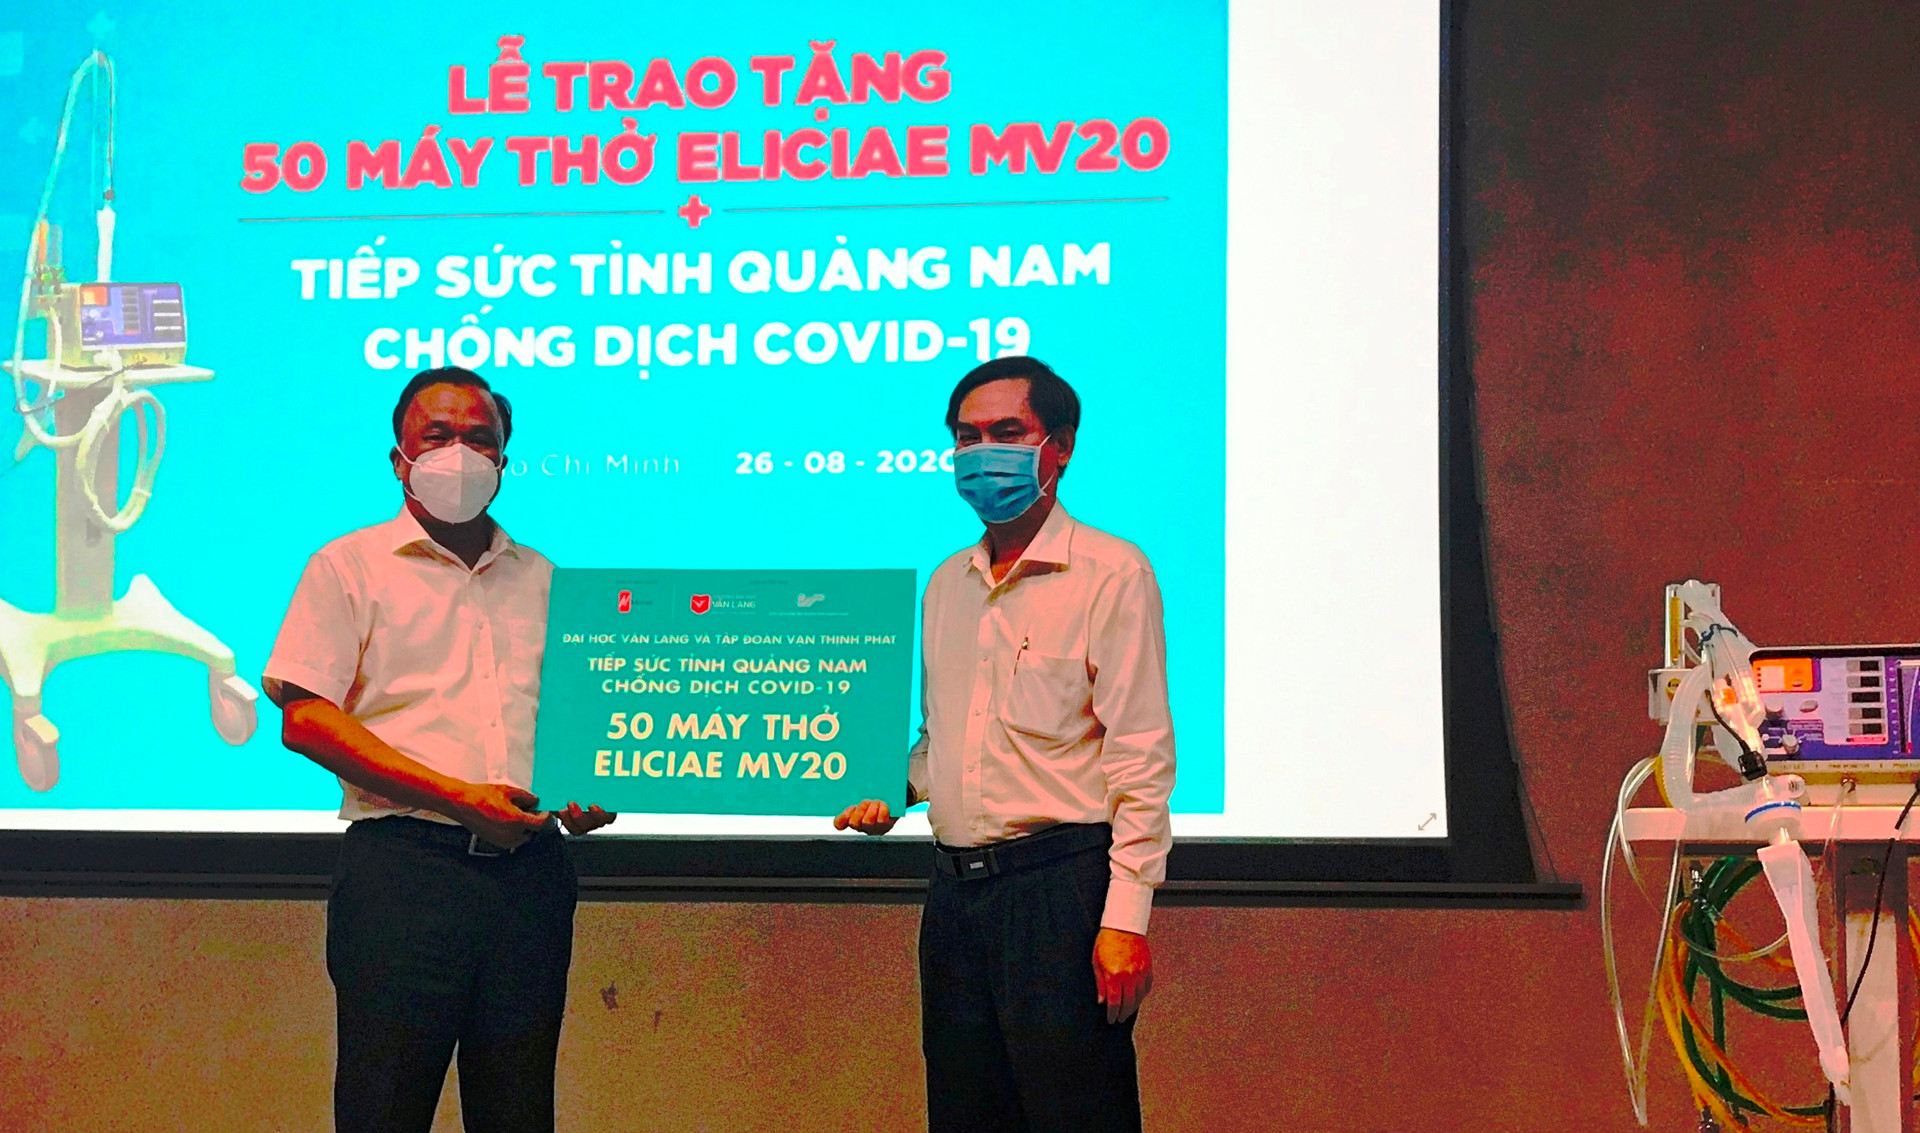 TS Mai Văn Mười , Phó Giám đốc Sở Y tế Quảng Nam tiếp nhận 50 máy thở Eliciae MV20.